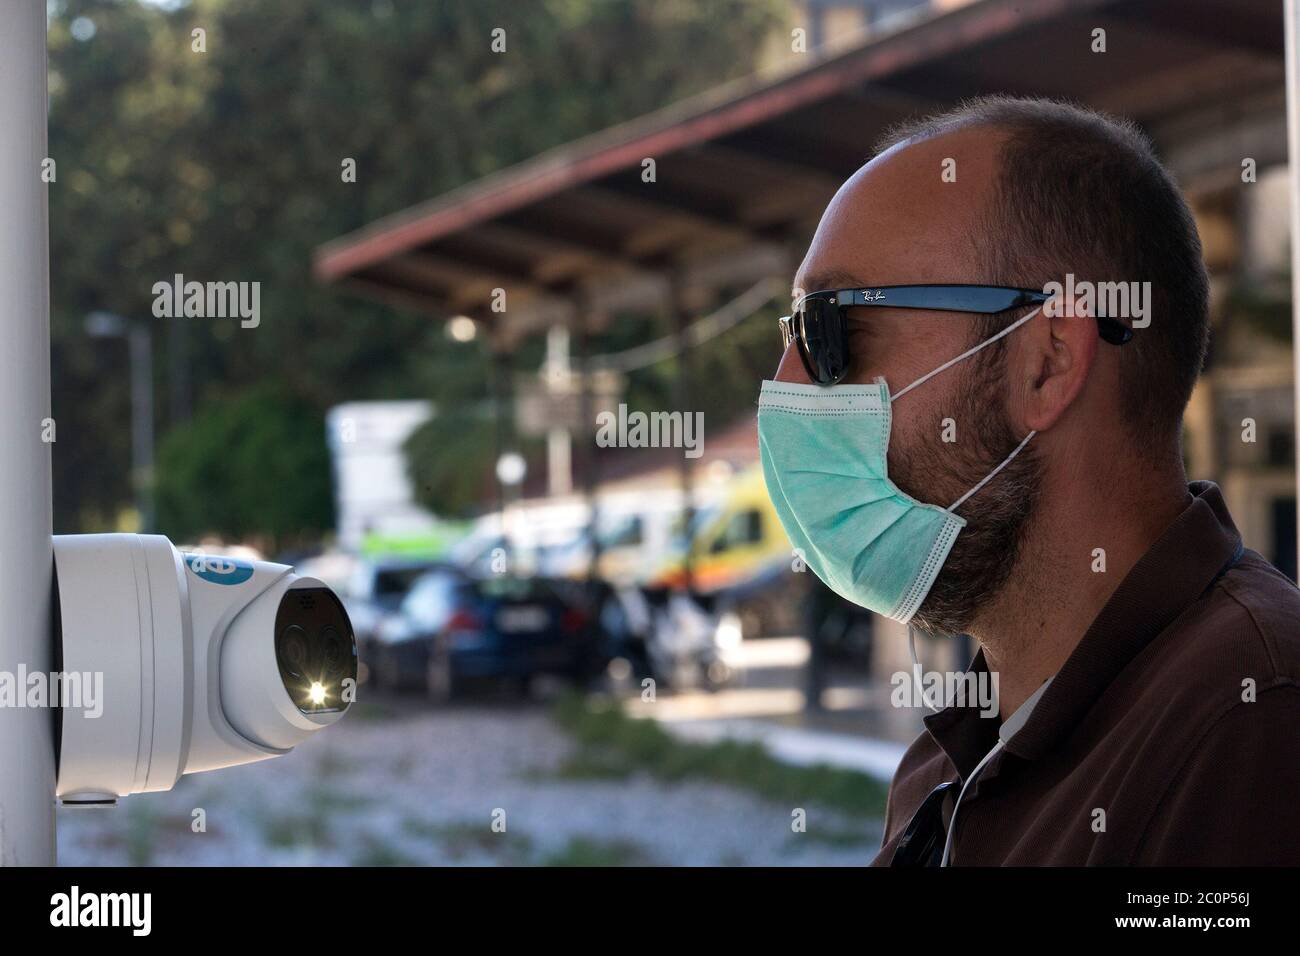 Atene, Grecia. 12 giugno 2020. Il 12 giugno 2020, un passeggero viene sottoposto a scansione della temperatura con una termocamera presso una stazione ferroviaria di Atene, Grecia. Credit: Marios Lolos/Xinhua/Alamy Live News Foto Stock